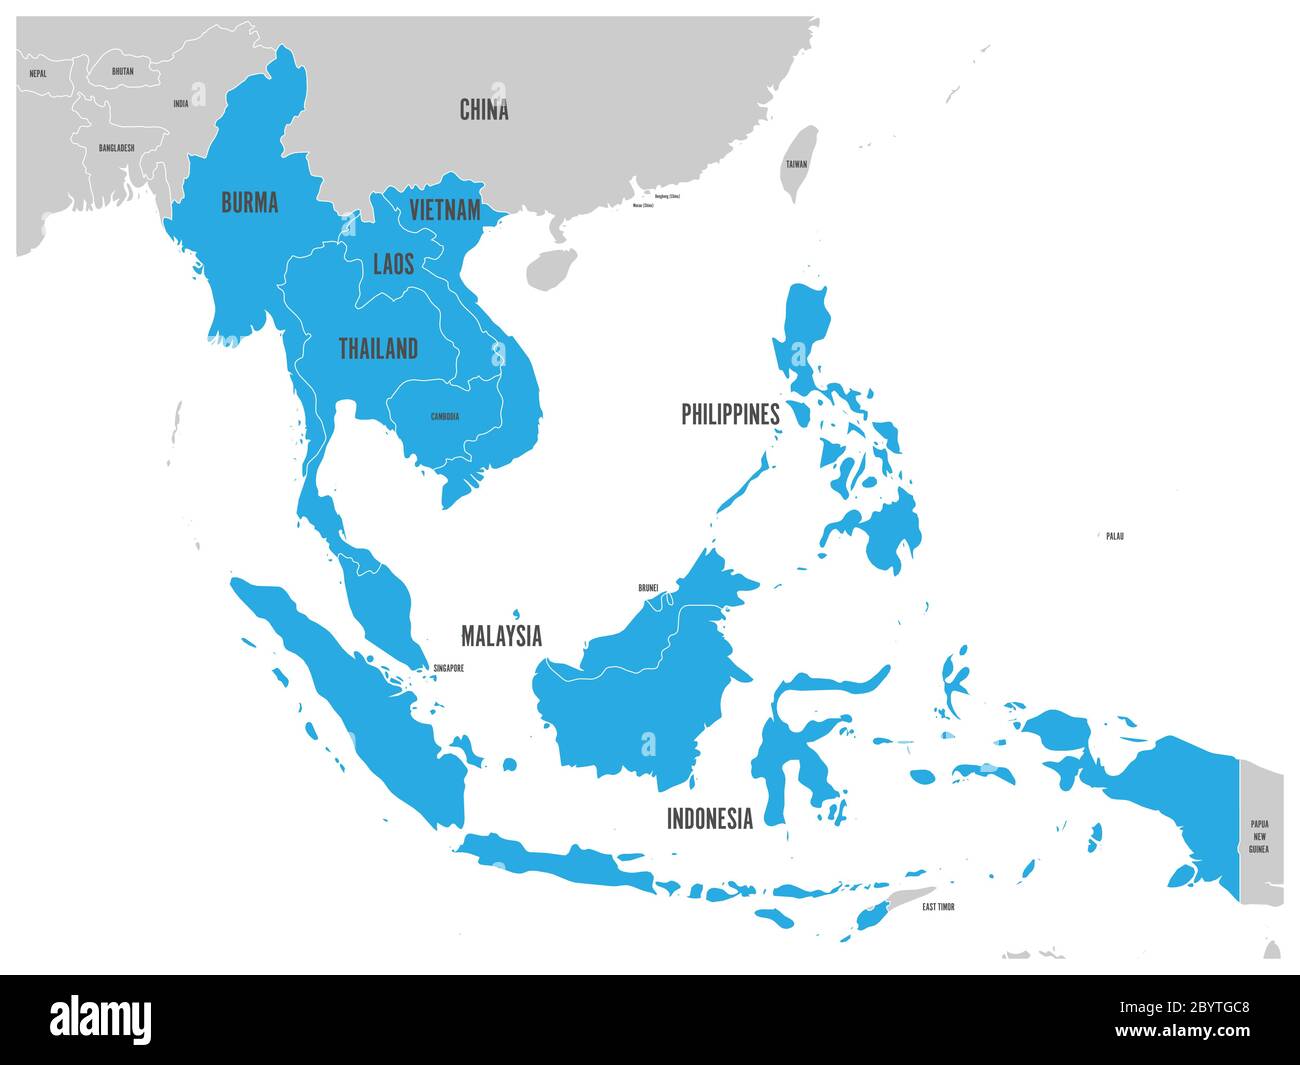 Comunità economica ASEAN, AEC, mappa. Mappa grigia con i paesi membri evidenziati in blu, Sud-est asiatico. Illustrazione vettoriale. Illustrazione Vettoriale